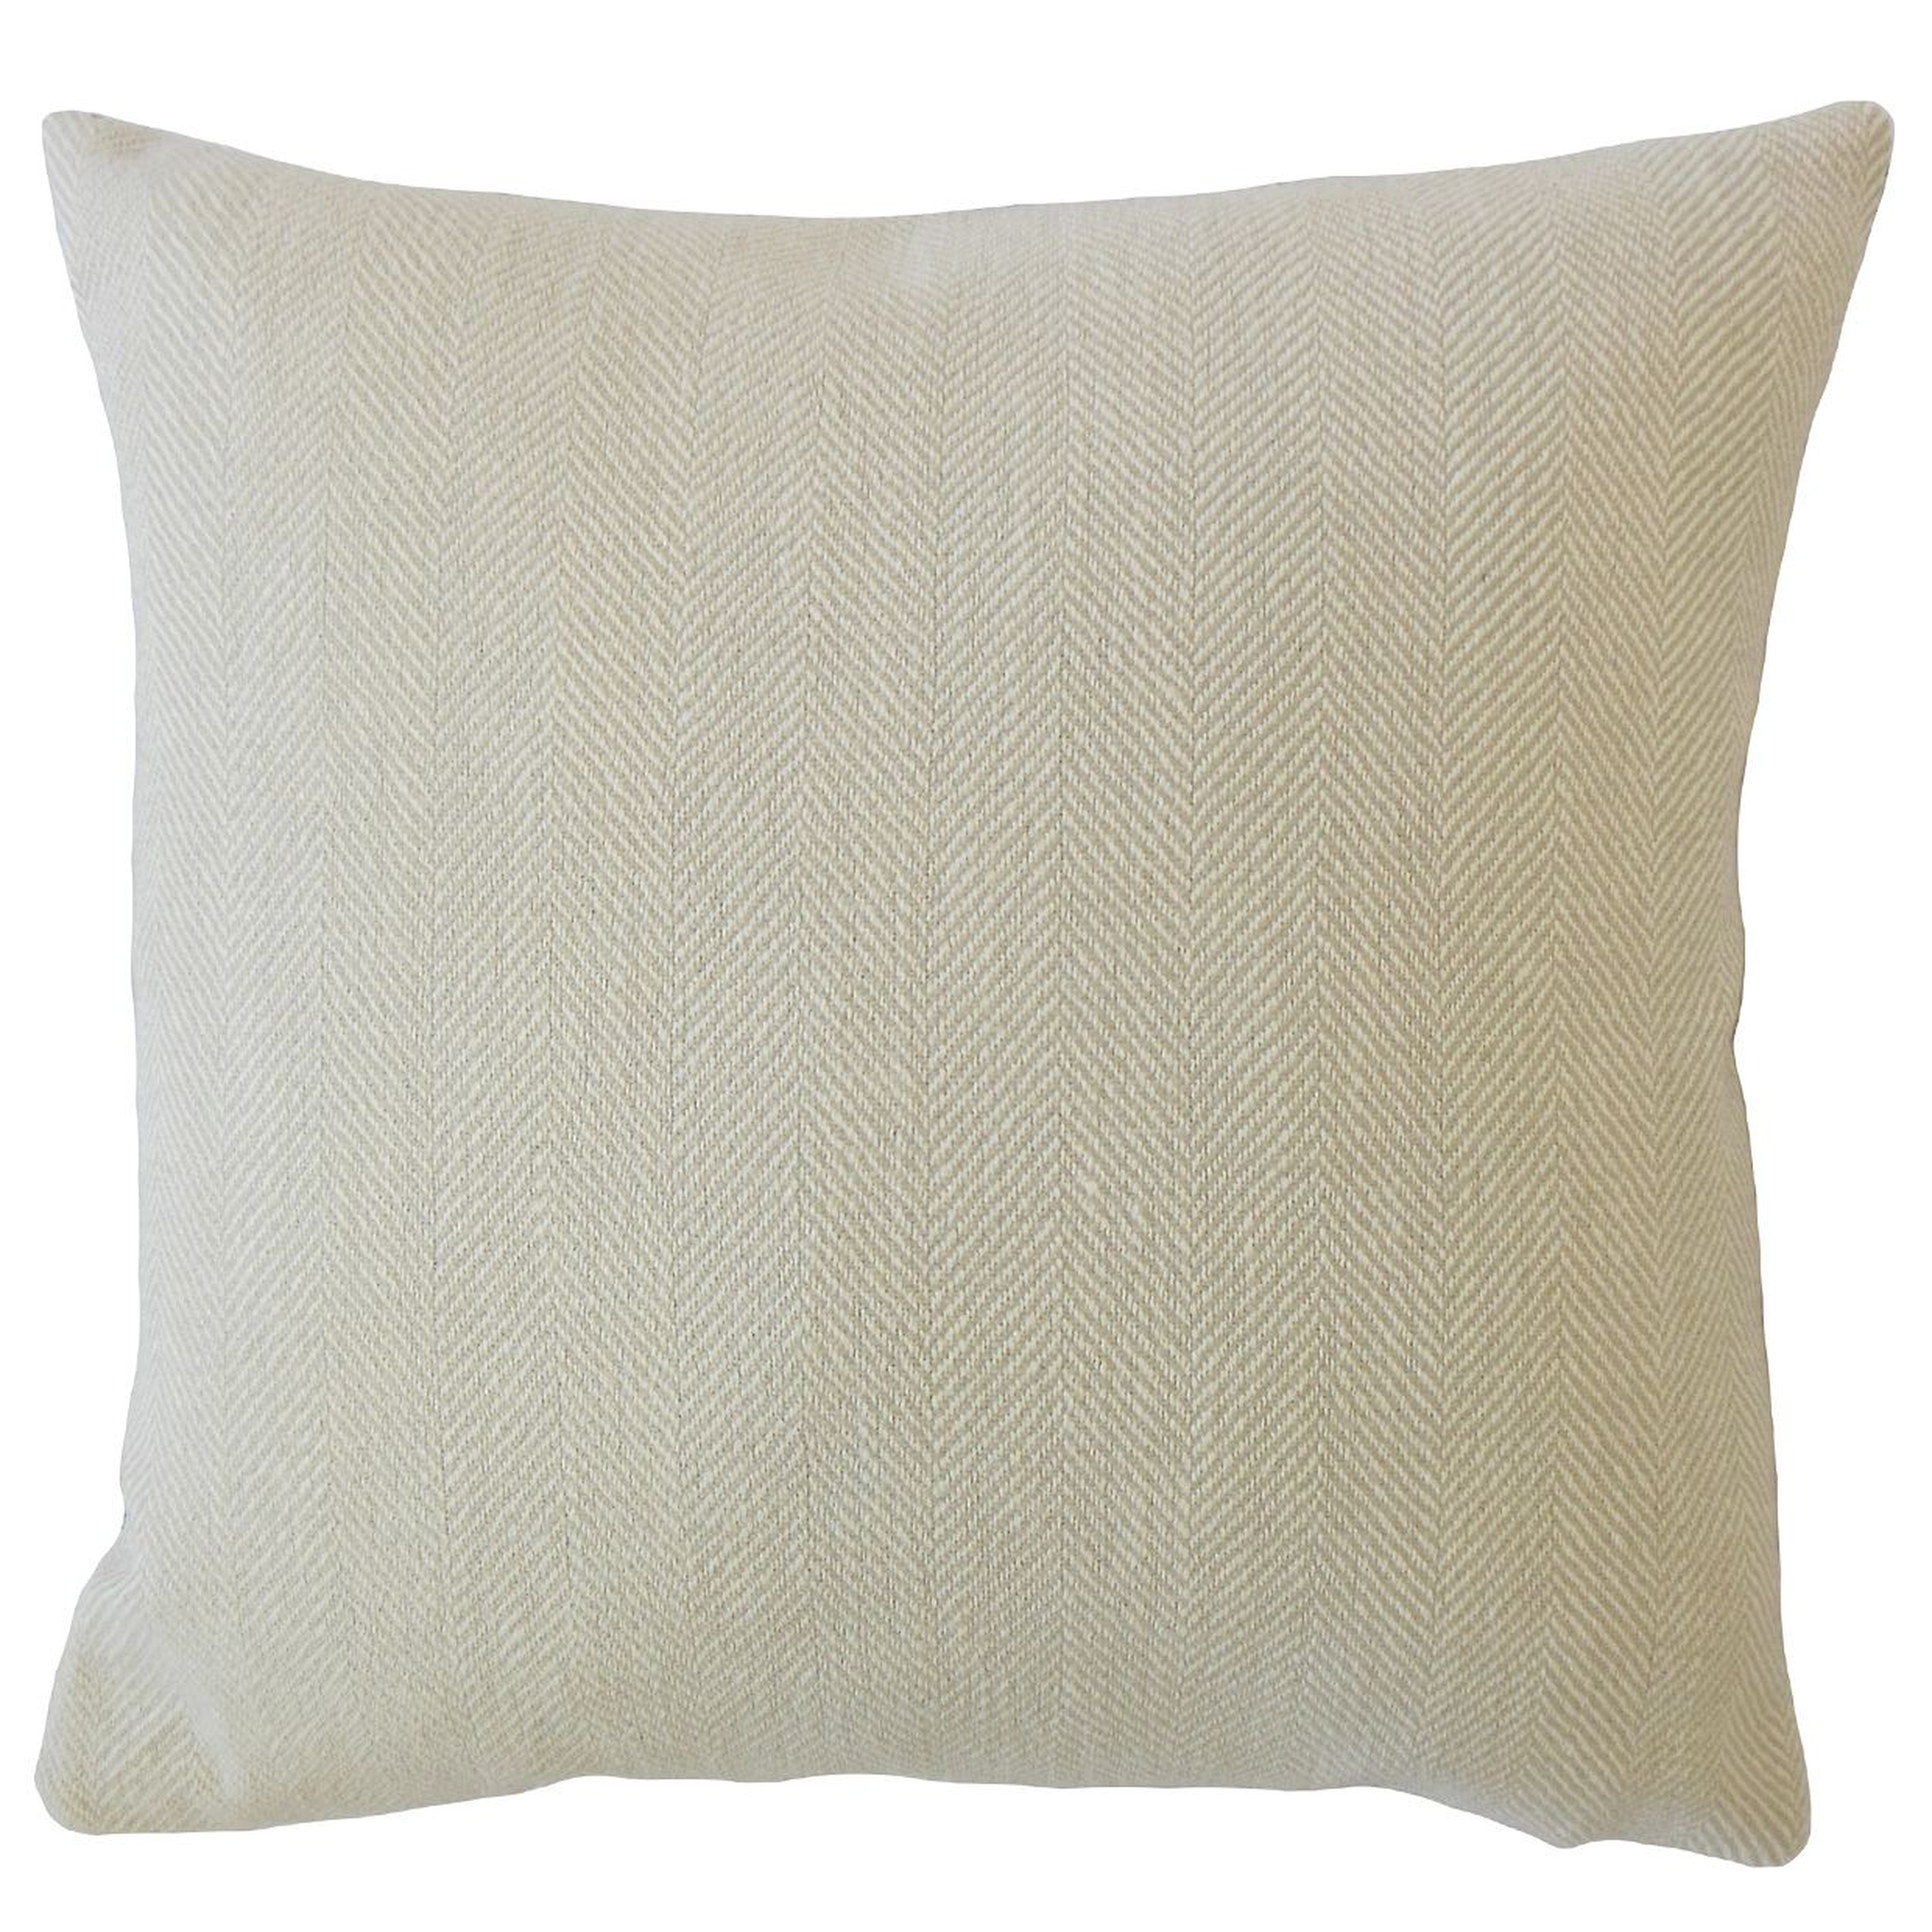 Linen Herringbone Pillow, Cement, 20" x 20" - Havenly Essentials